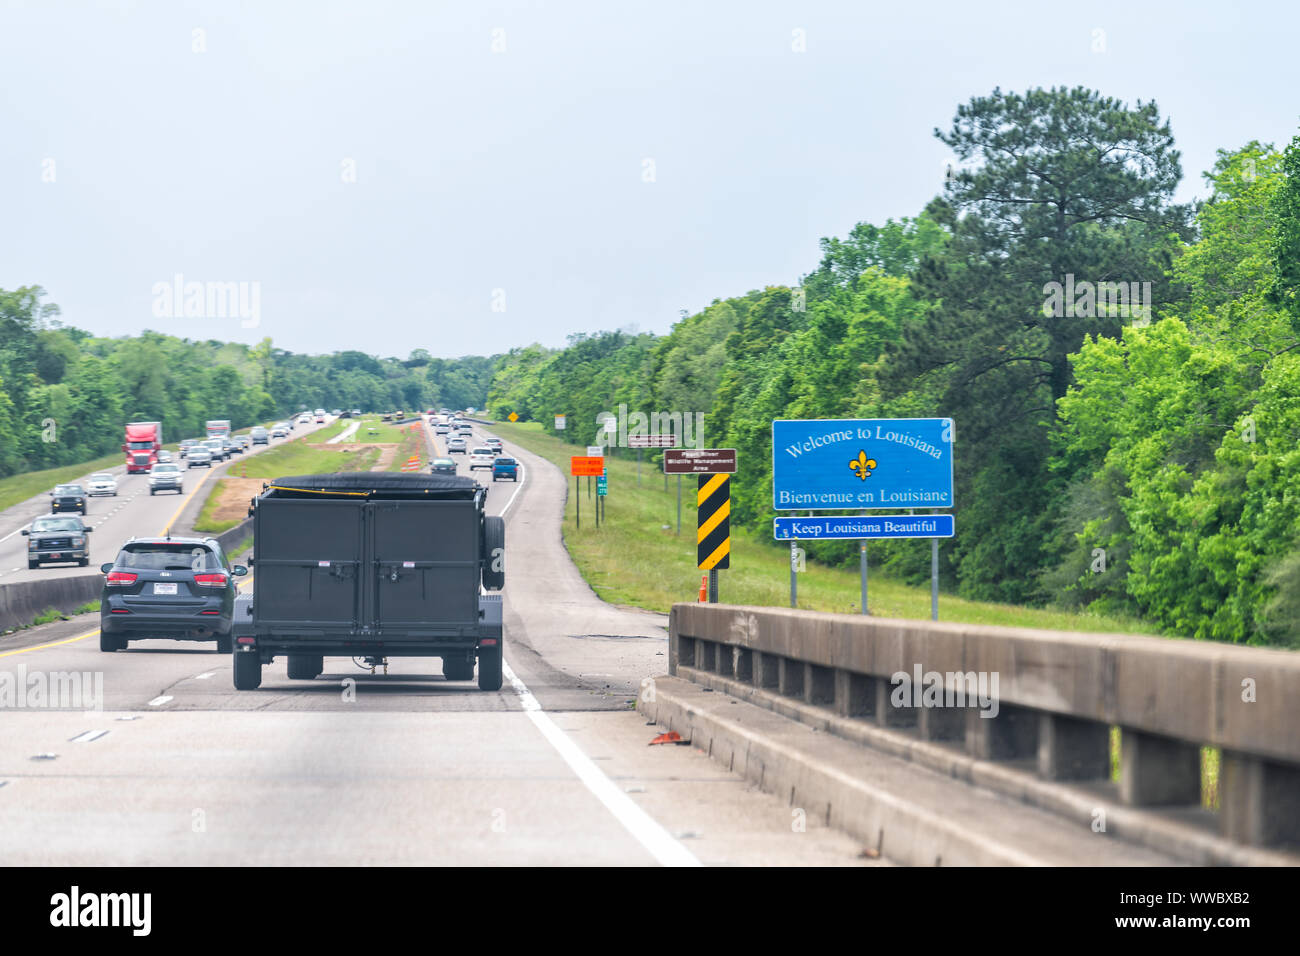 Slidell, États-Unis - 22 Avril 2018 : Route Autoroute avec Bienvenue en Louisiane et signe un texte sur rue avec des voitures en circulation sur l'autoroute i10 Banque D'Images